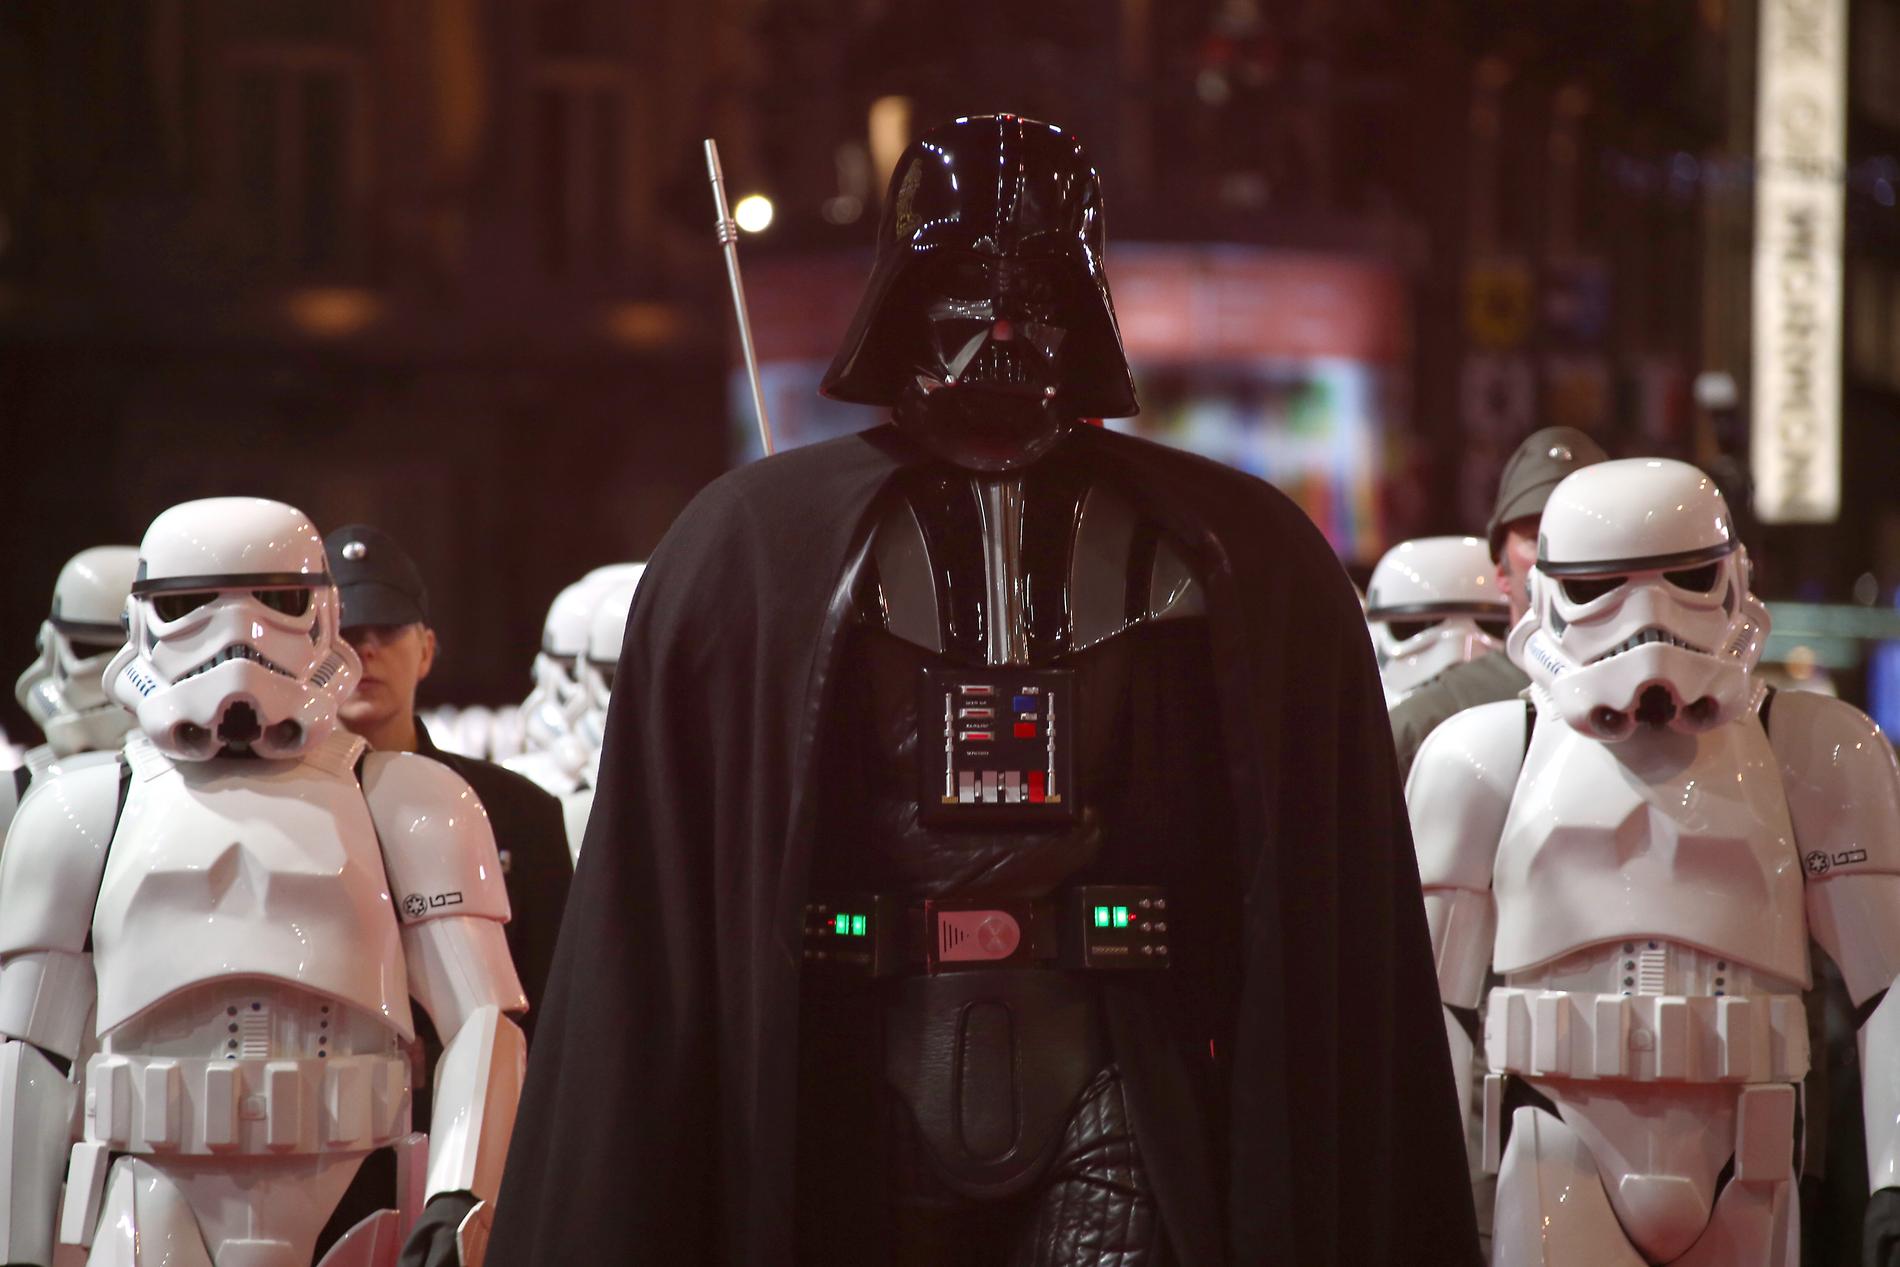 Människor utklädda till Darth Vader på premiären av ”Star Wars: The Force Awakens”